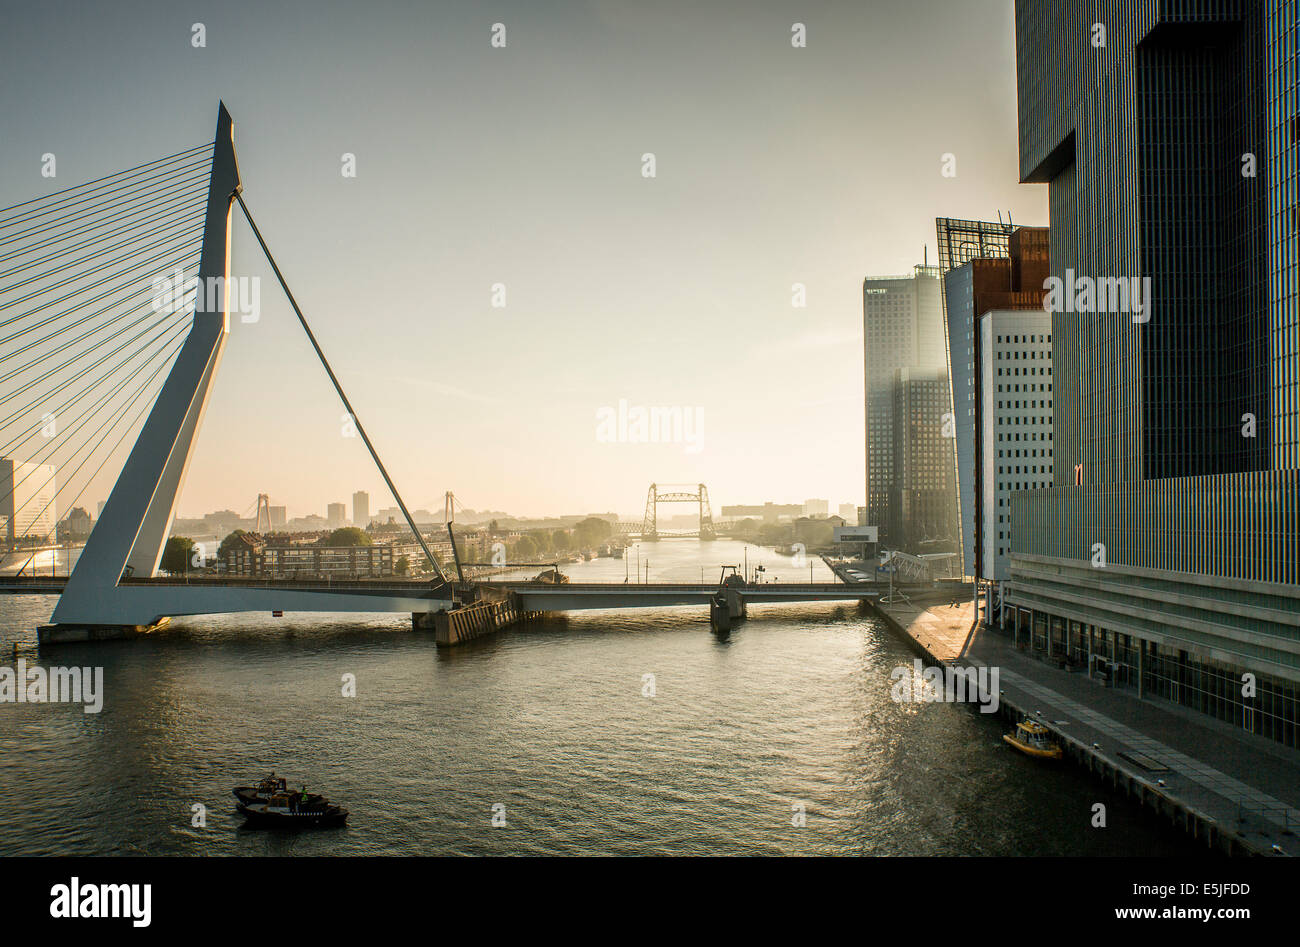 Niederlande, Rotterdam, Erasmus-Brücke. Sunrise. Blick vom Kreuzfahrtschiff MS Rotterdam. Hintergrund-Brücke De Hef Stockfoto